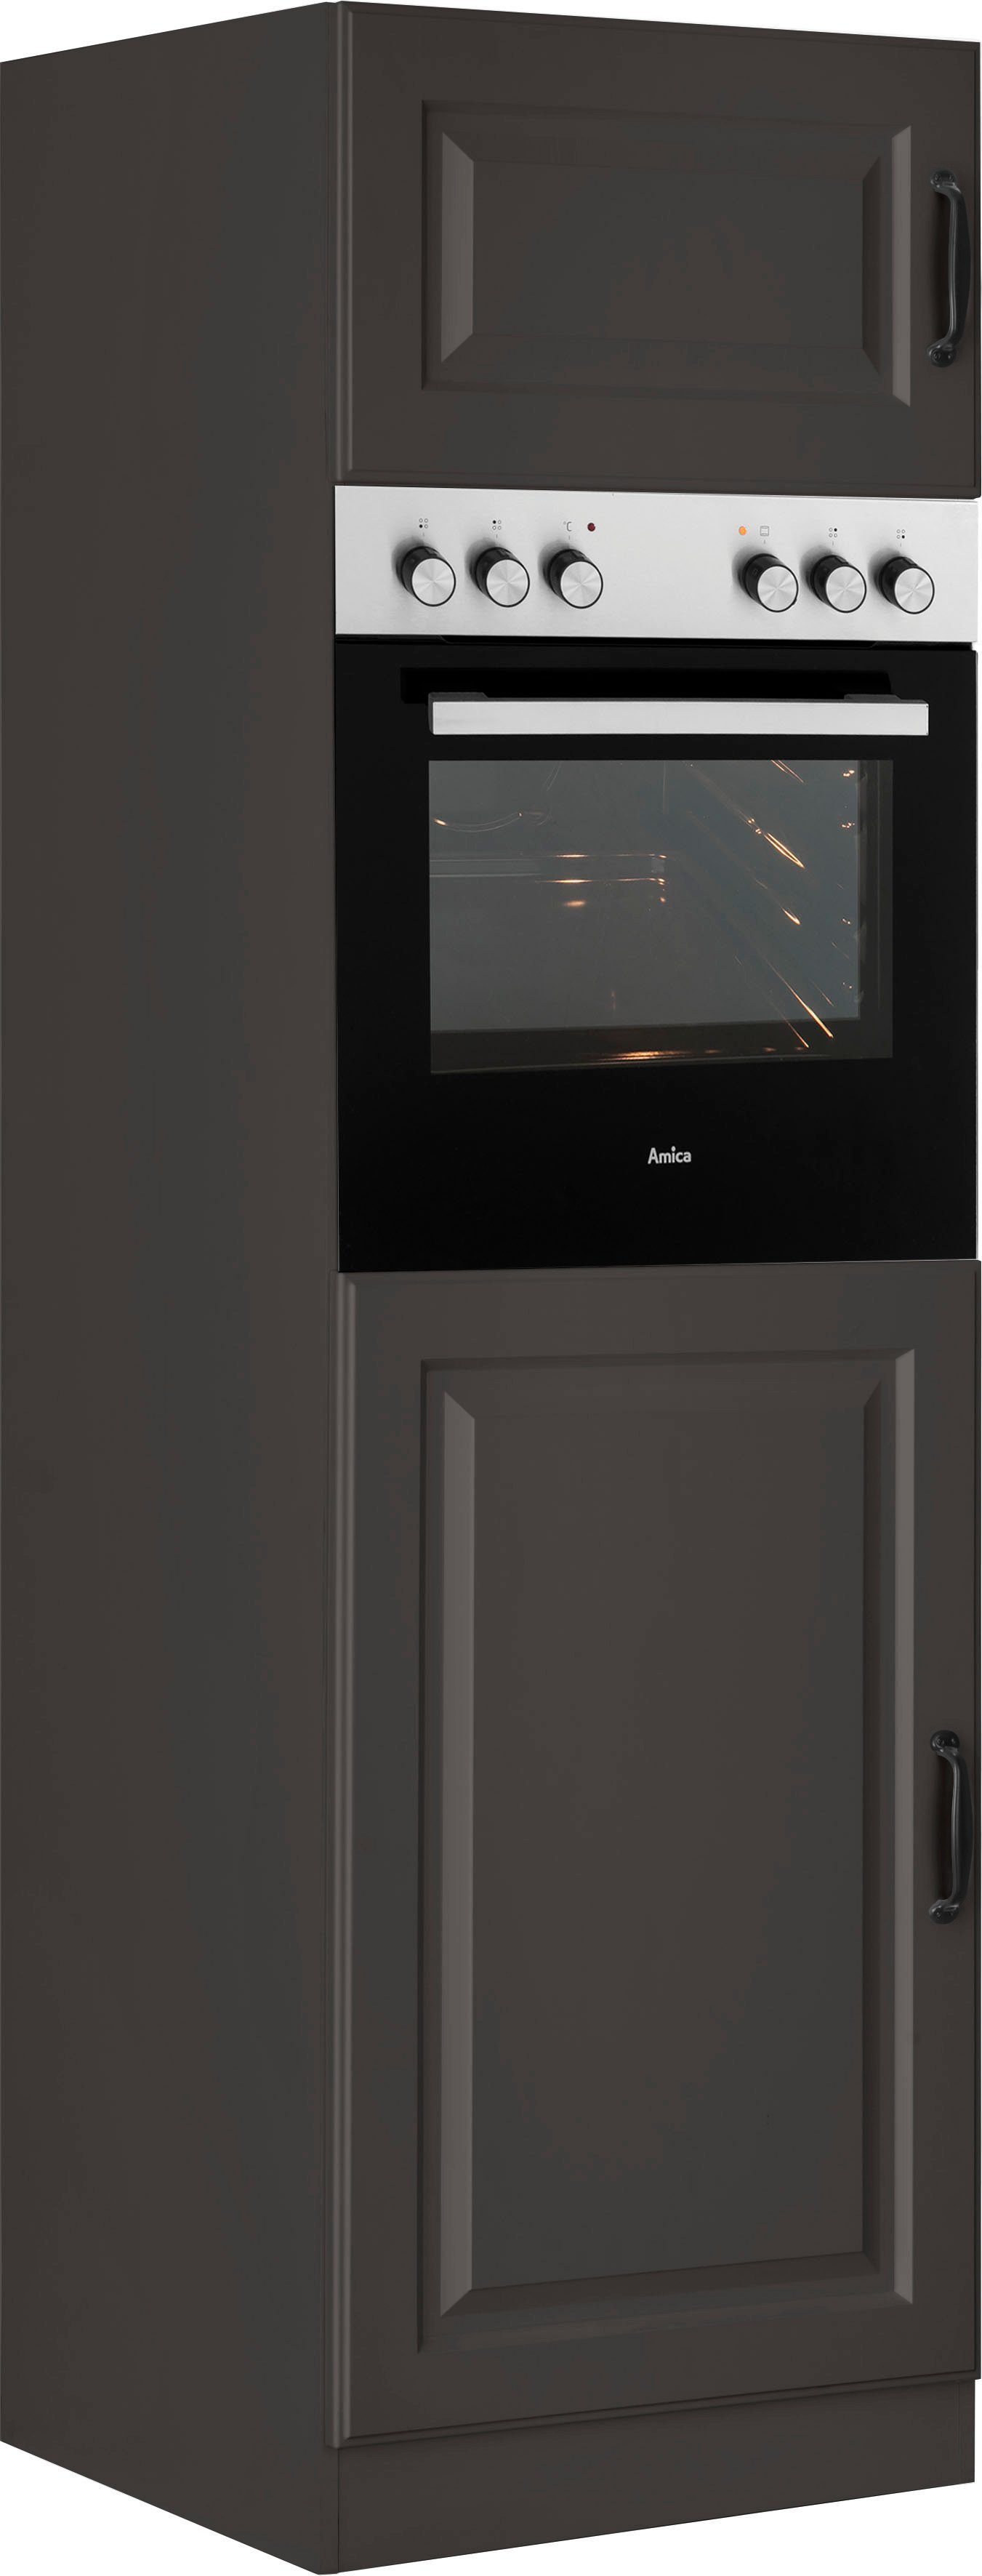 wiho Küchen Oven/koelkastombouw Erla 60 cm breed met vakkenfront